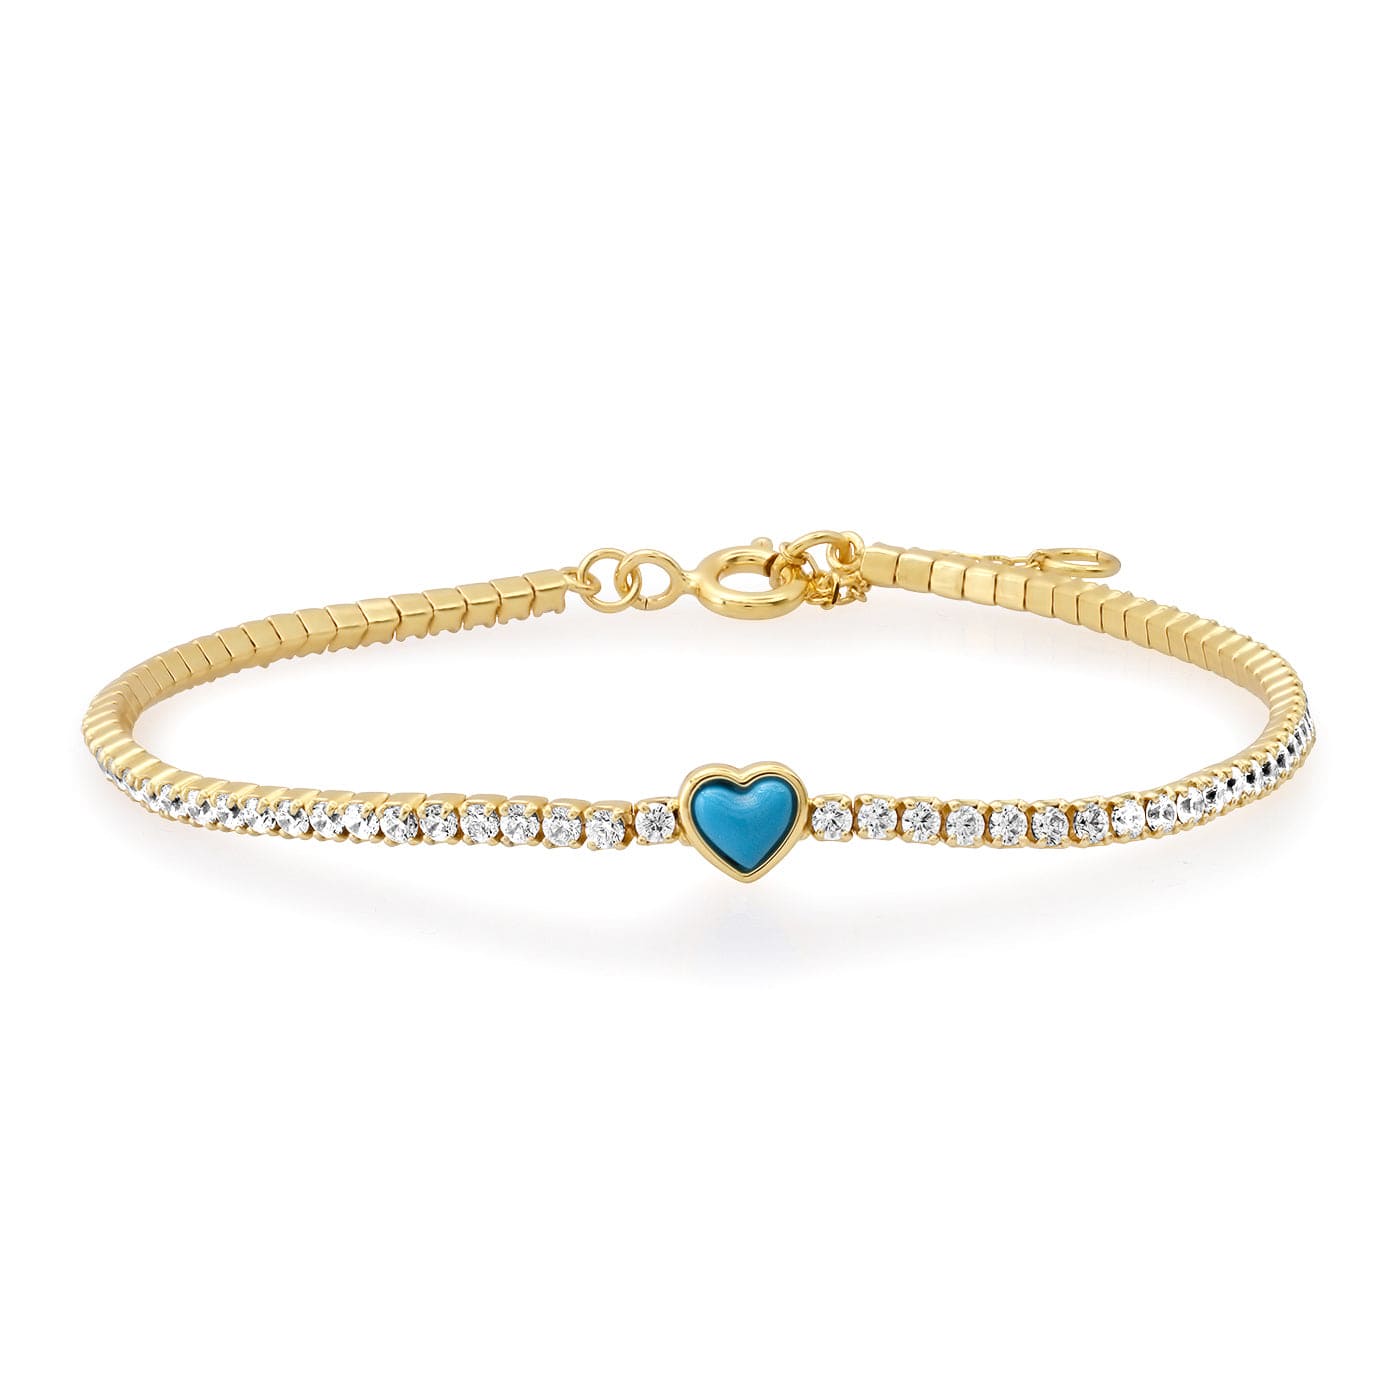 TAI JEWELRY Bracelet CZ Tennis Bracelet with Turquoise Heart